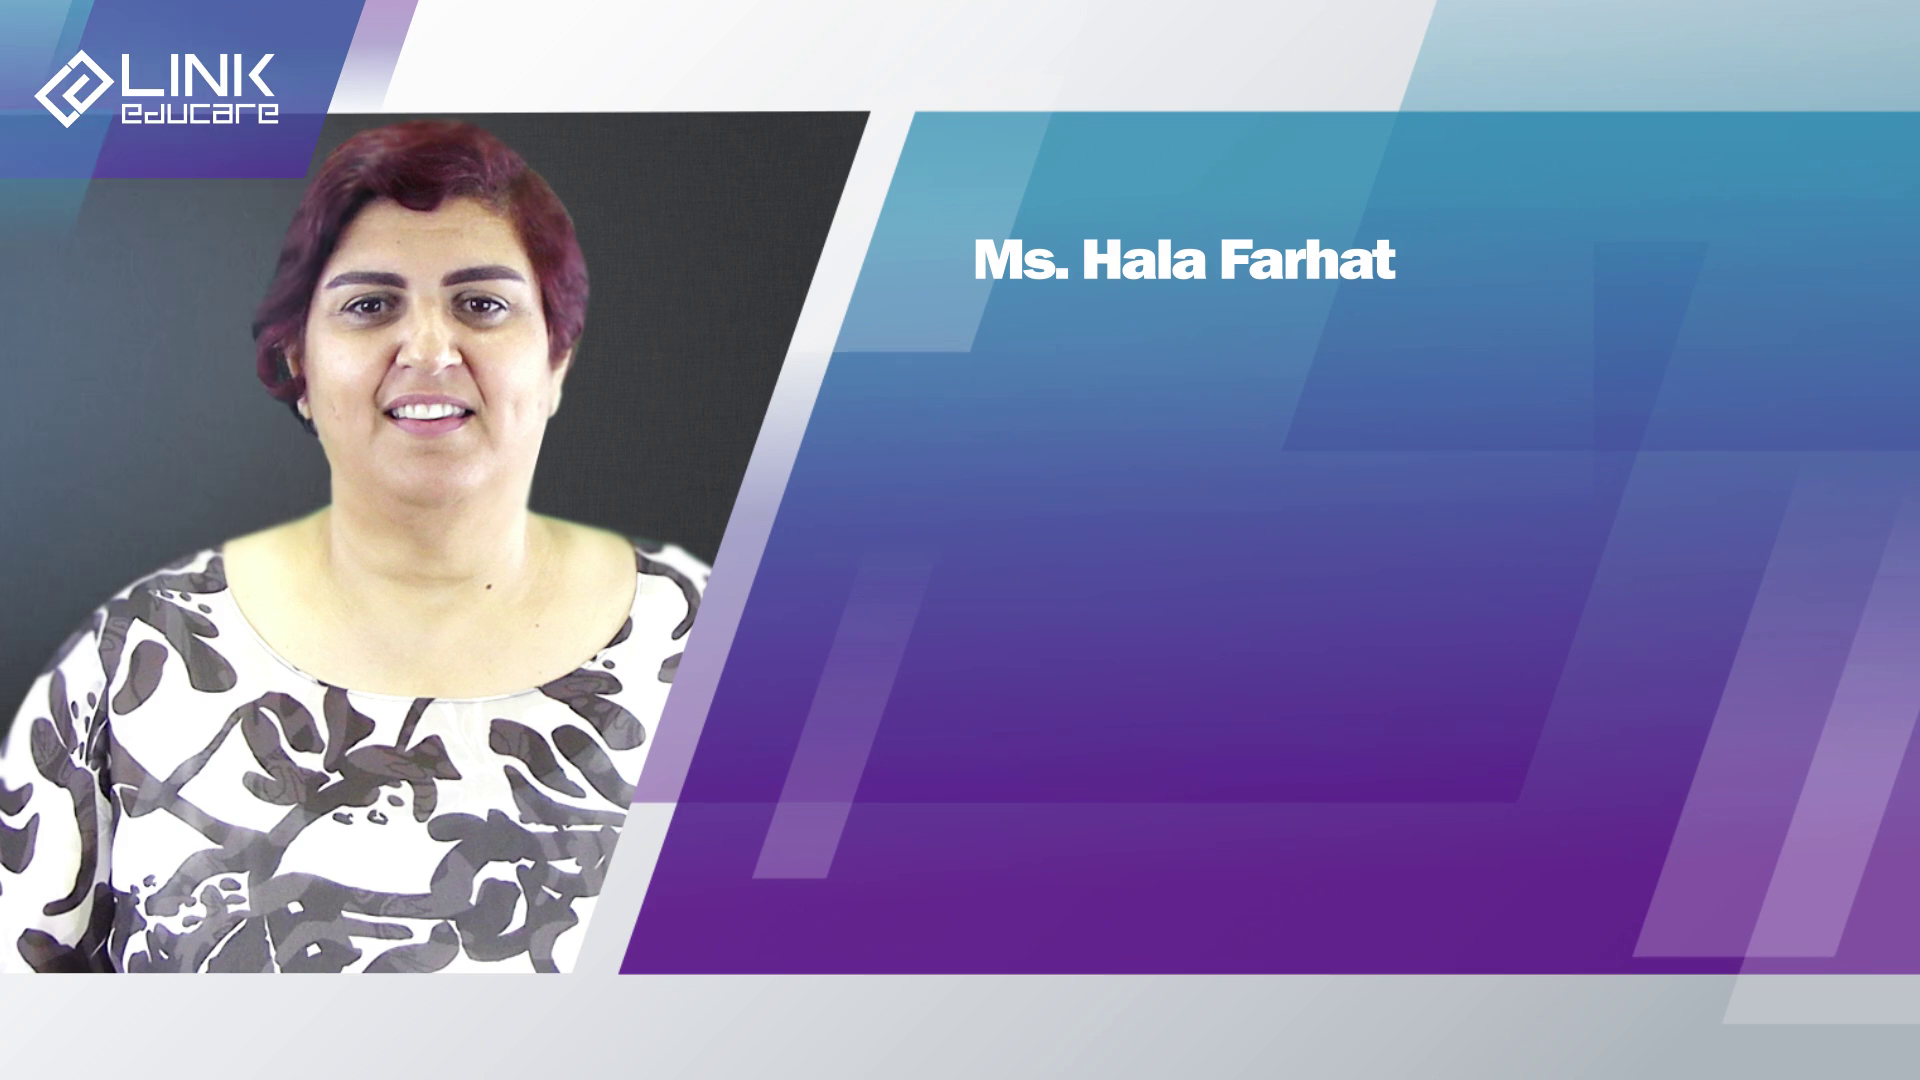 Ms. Hala Farhat